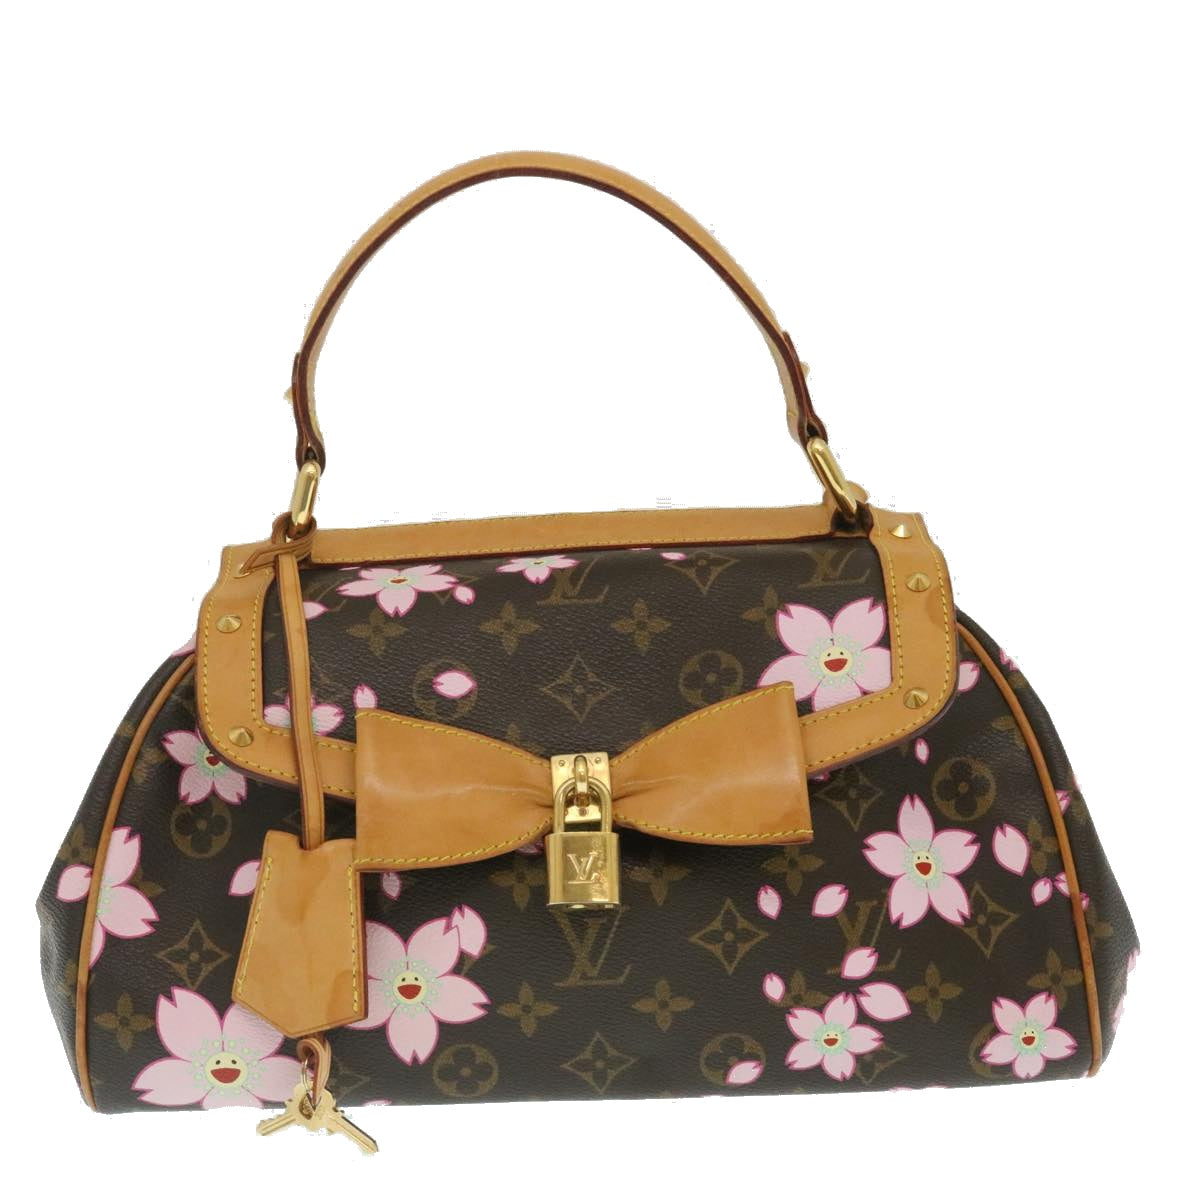 LOUIS VUITTON Monogram Cherry Blossom Sac Retro PM Hand Bag M92012 Auth 29255A